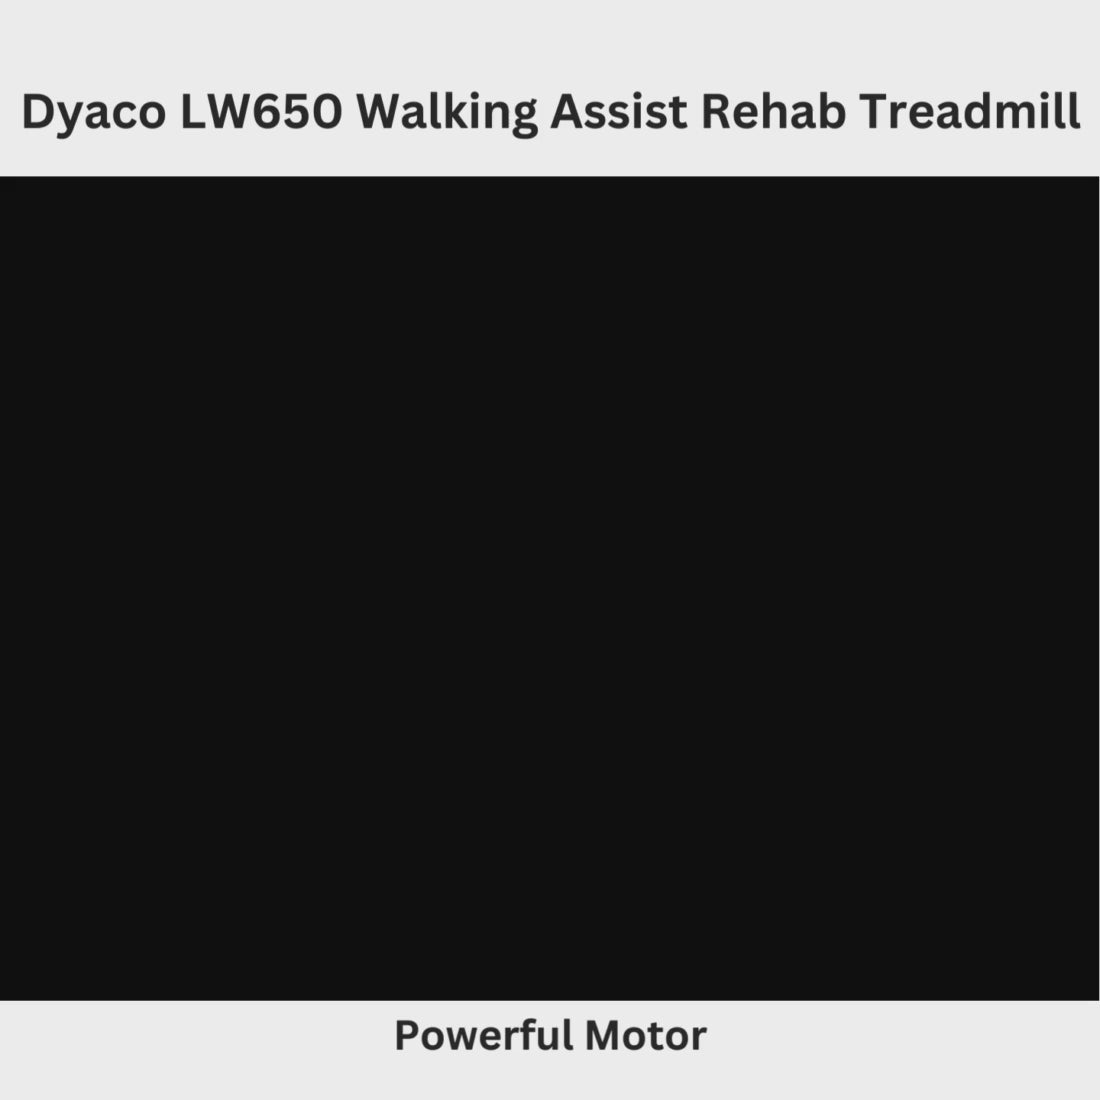 Dyaco LW650 Walking Assist Treadmill